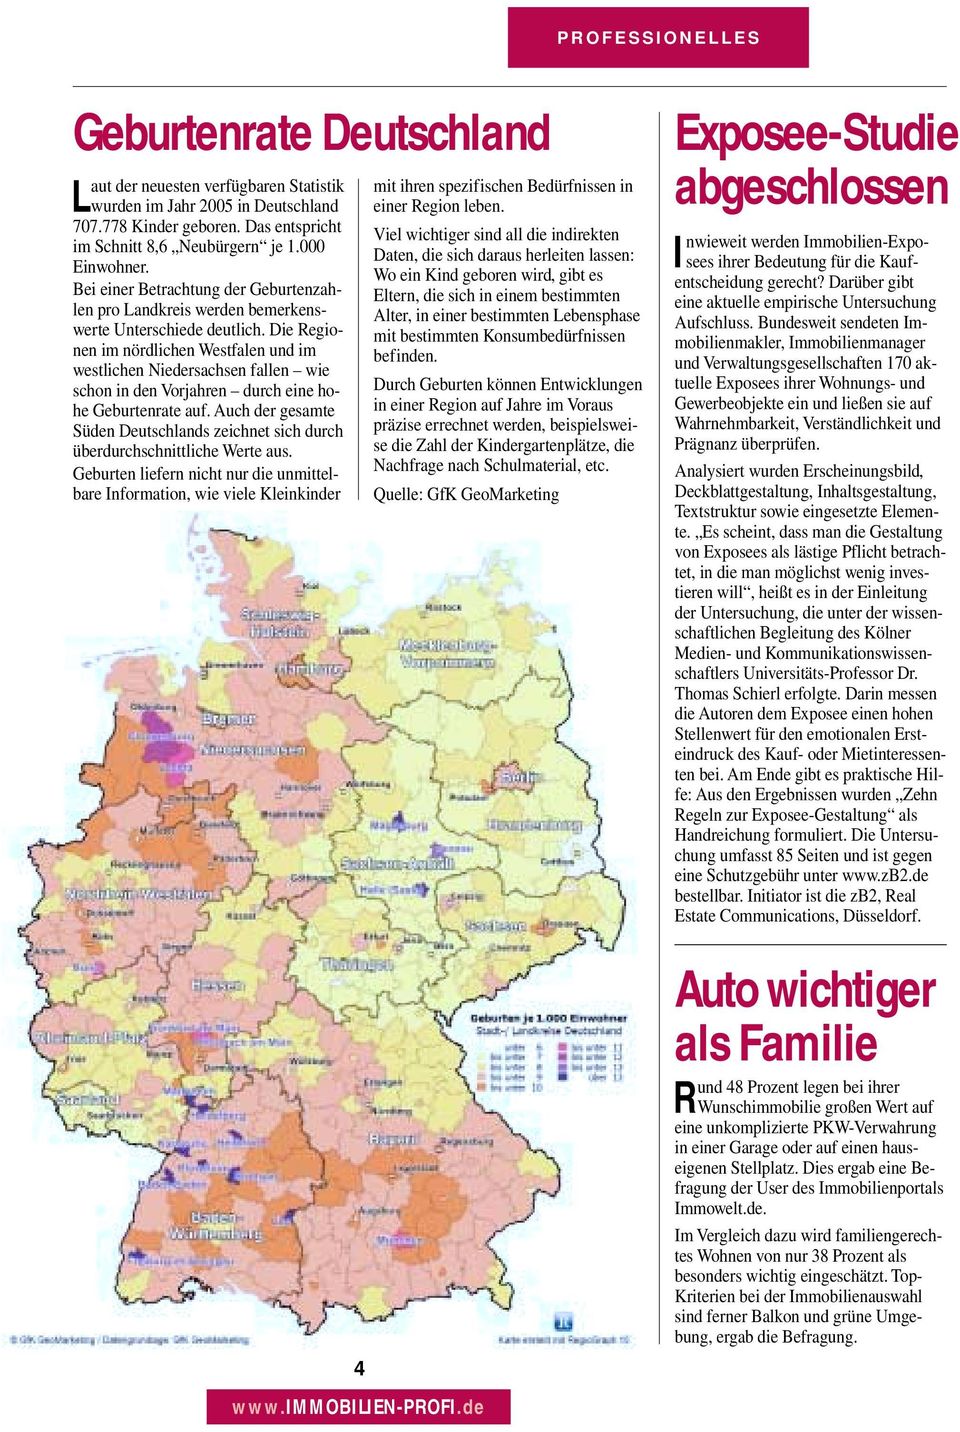 Die Regionen im nördlichen Westfalen und im westlichen Niedersachsen fallen wie schon in den Vorjahren durch eine hohe Geburtenrate auf.